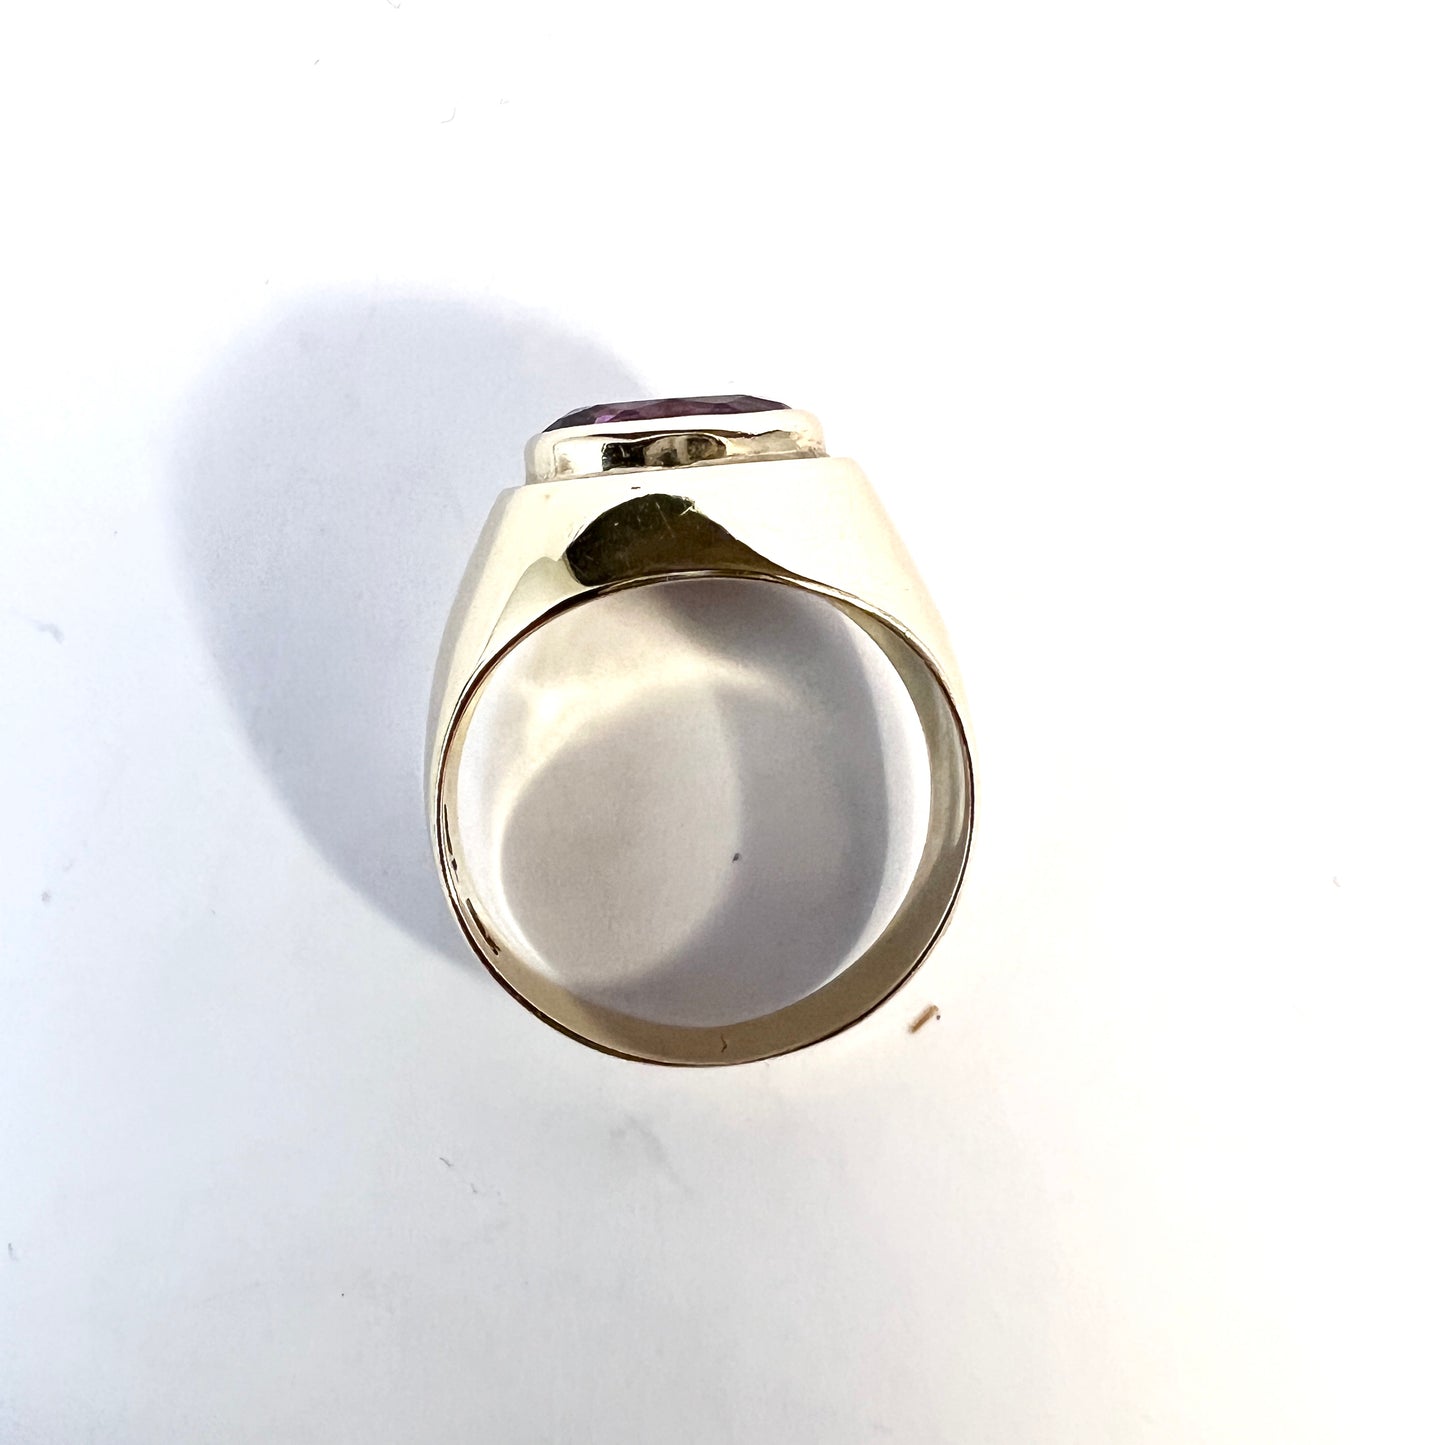 Jørgen Larsen, Copenhagen Denmark 1950-60s. Vintage 14k Gold Synthetic Sapphire Ring.